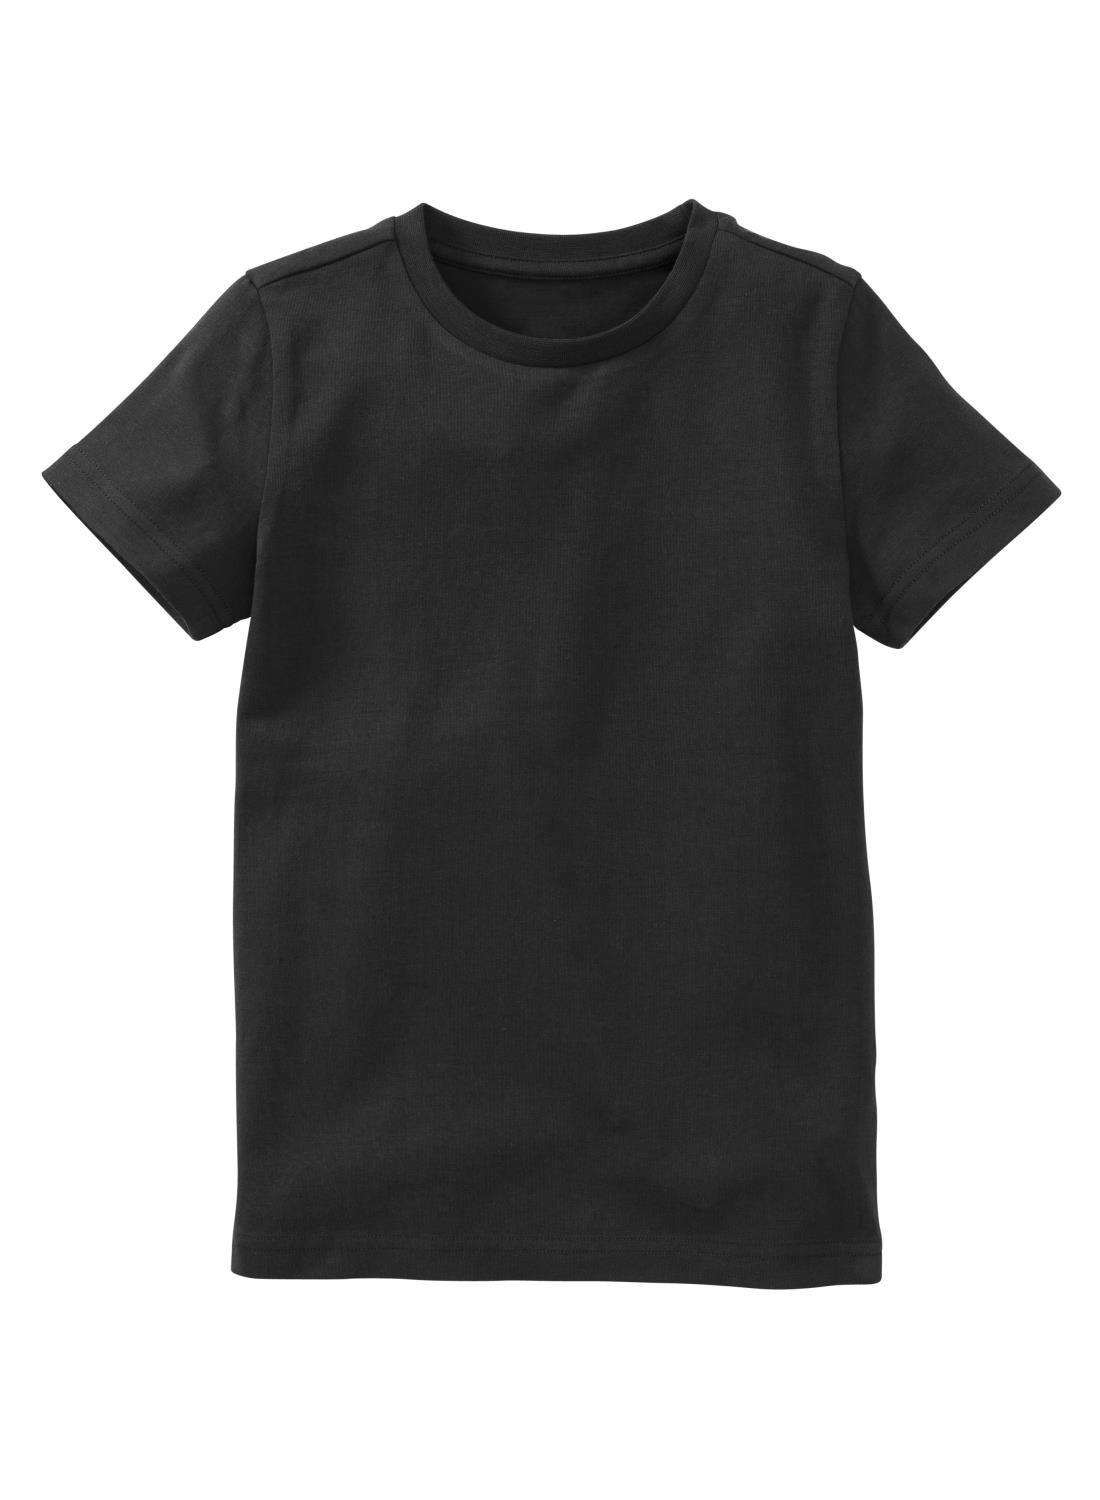 HEMA Kinder T-shirt Biologisch Katoen Zwart (zwart)